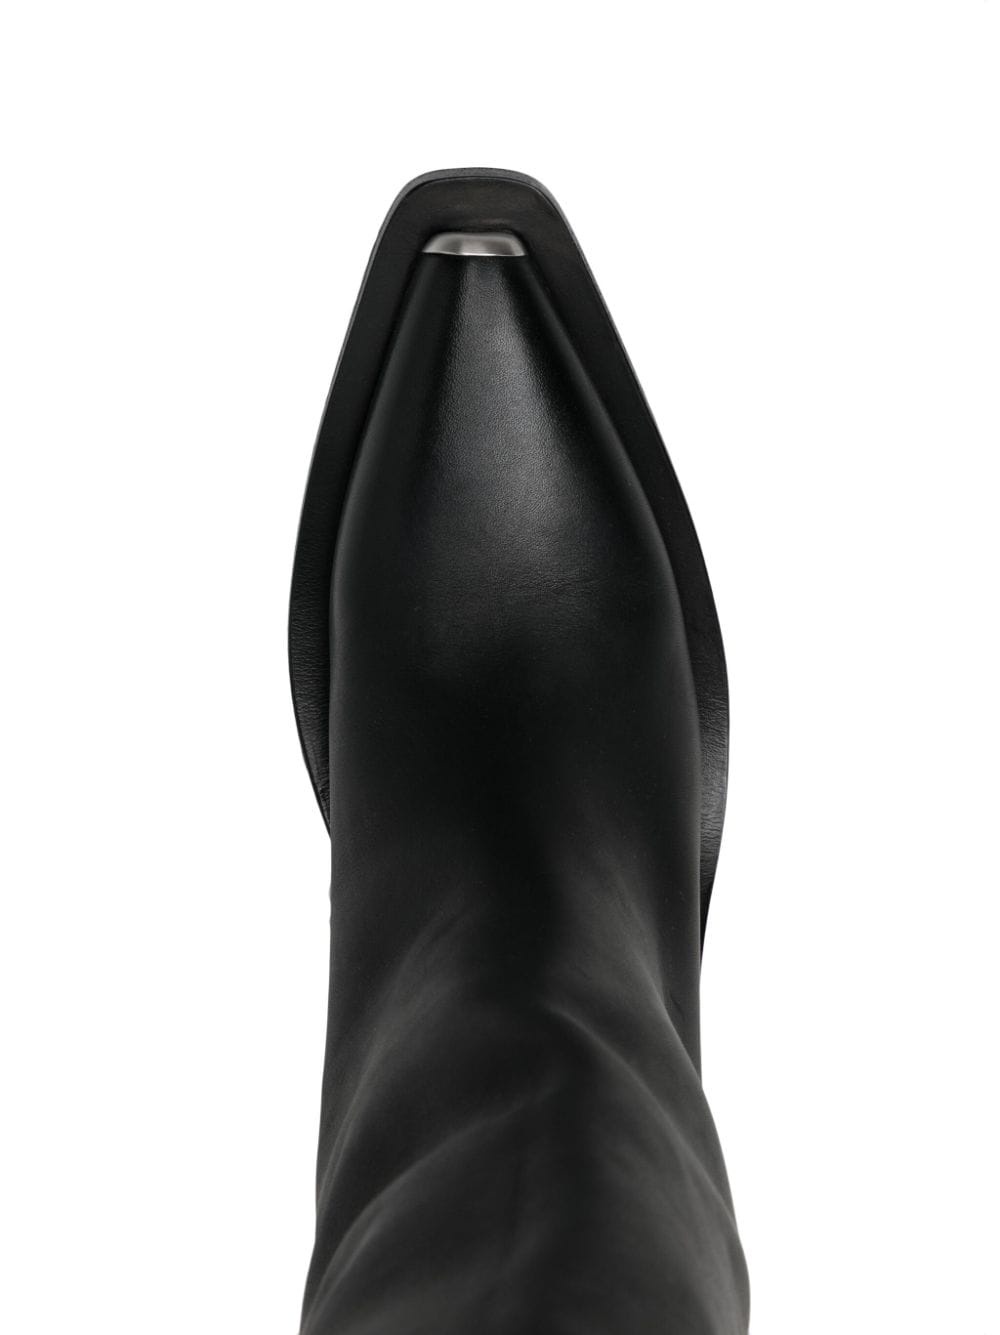 Marsèll Black Gessetto Tall Boots